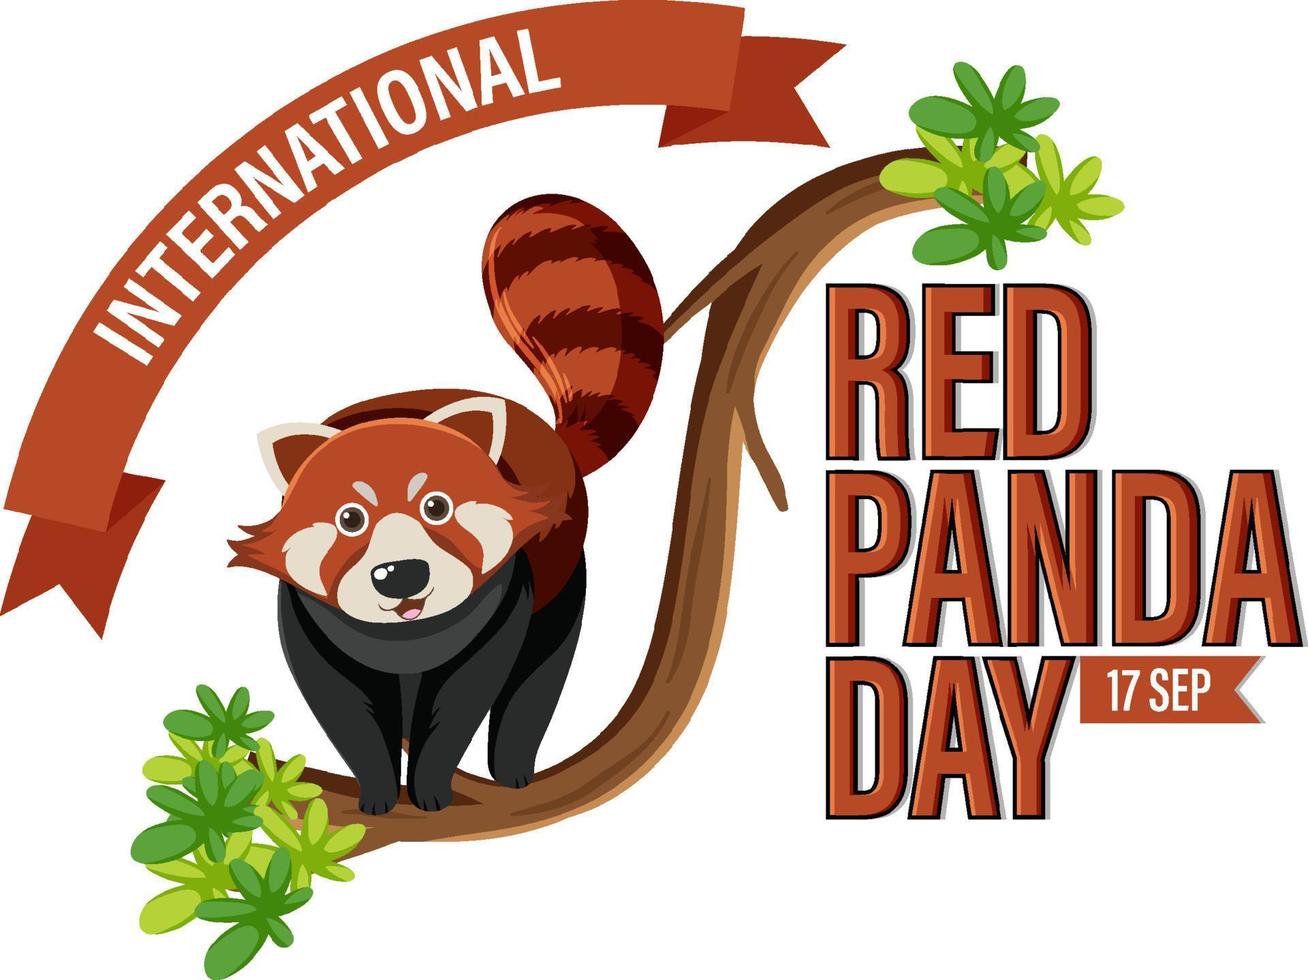 día internacional del panda rojo vector